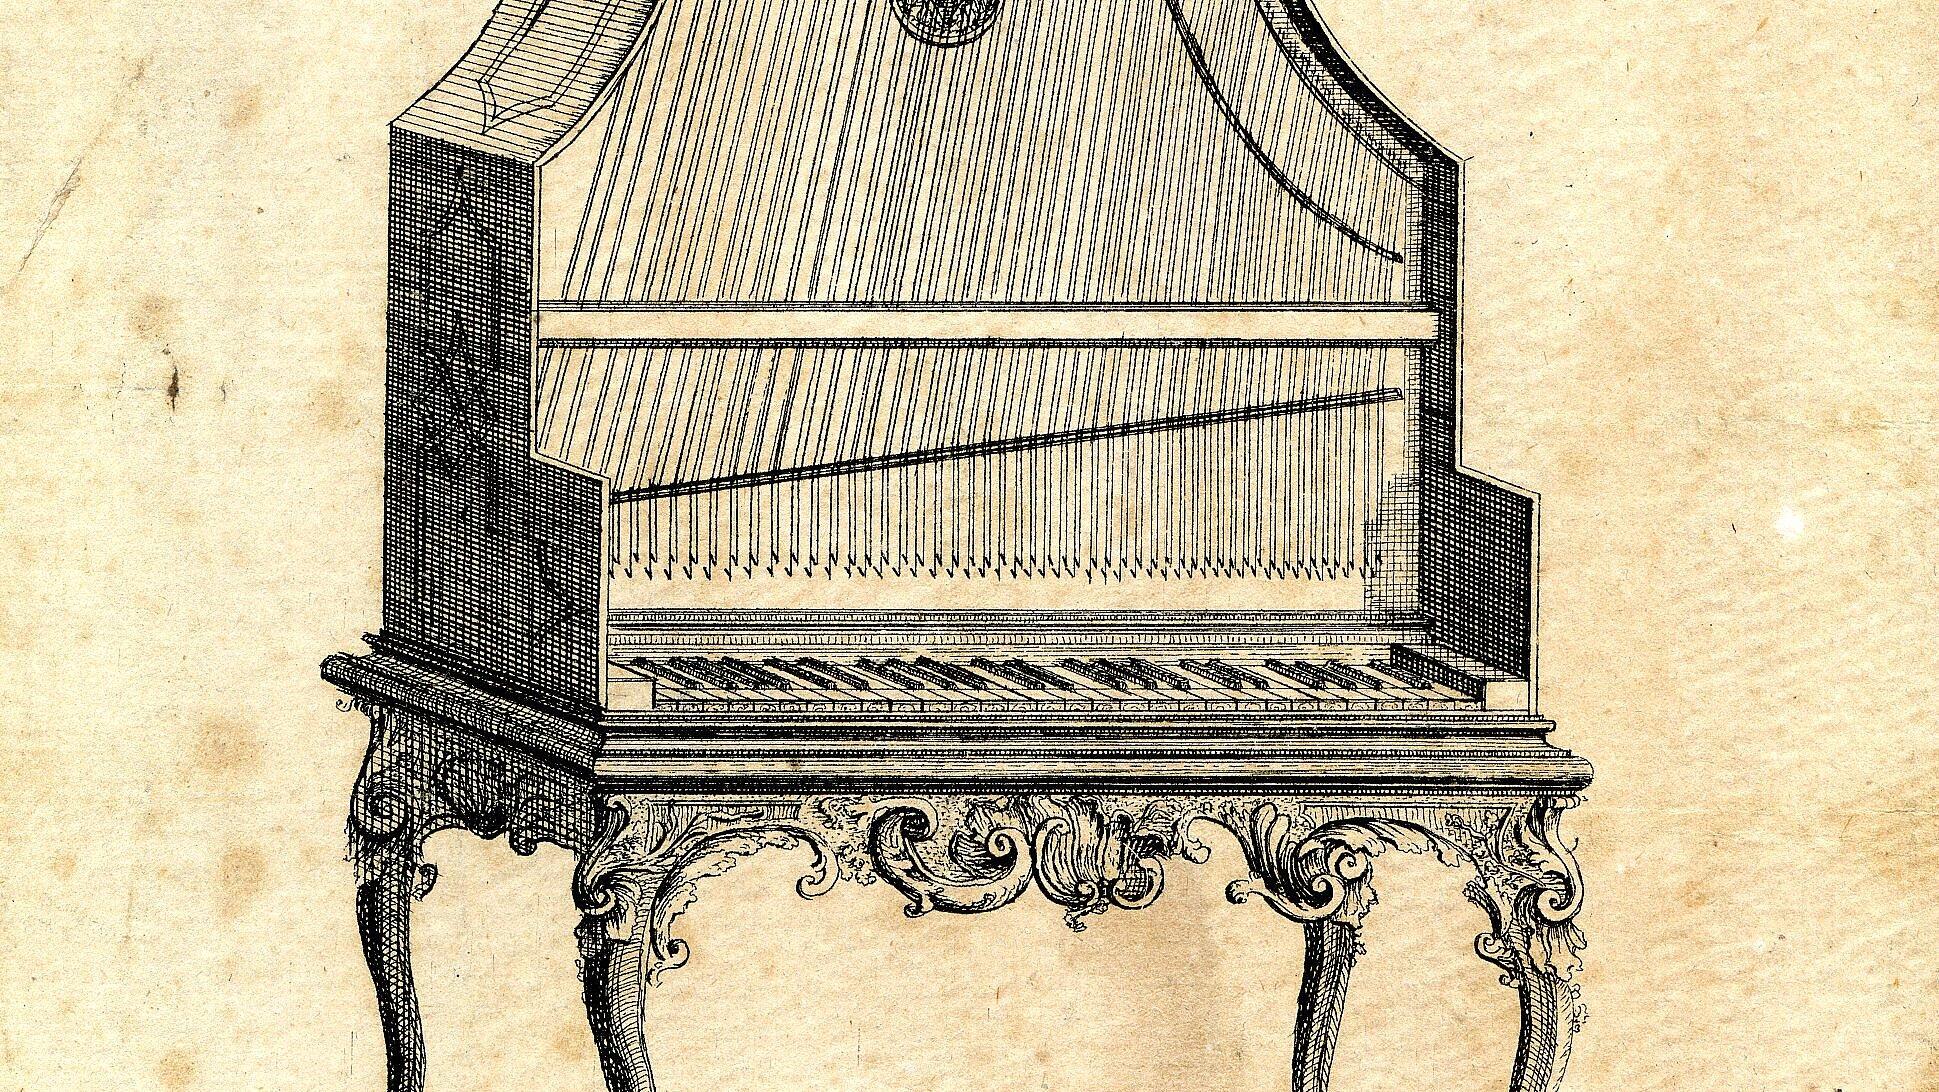 Entwickelt in der Friederici-Werkstatt: Der Pyramidenflügel, ein aufrecht stehendes Klavier aus dem Jahr 1745